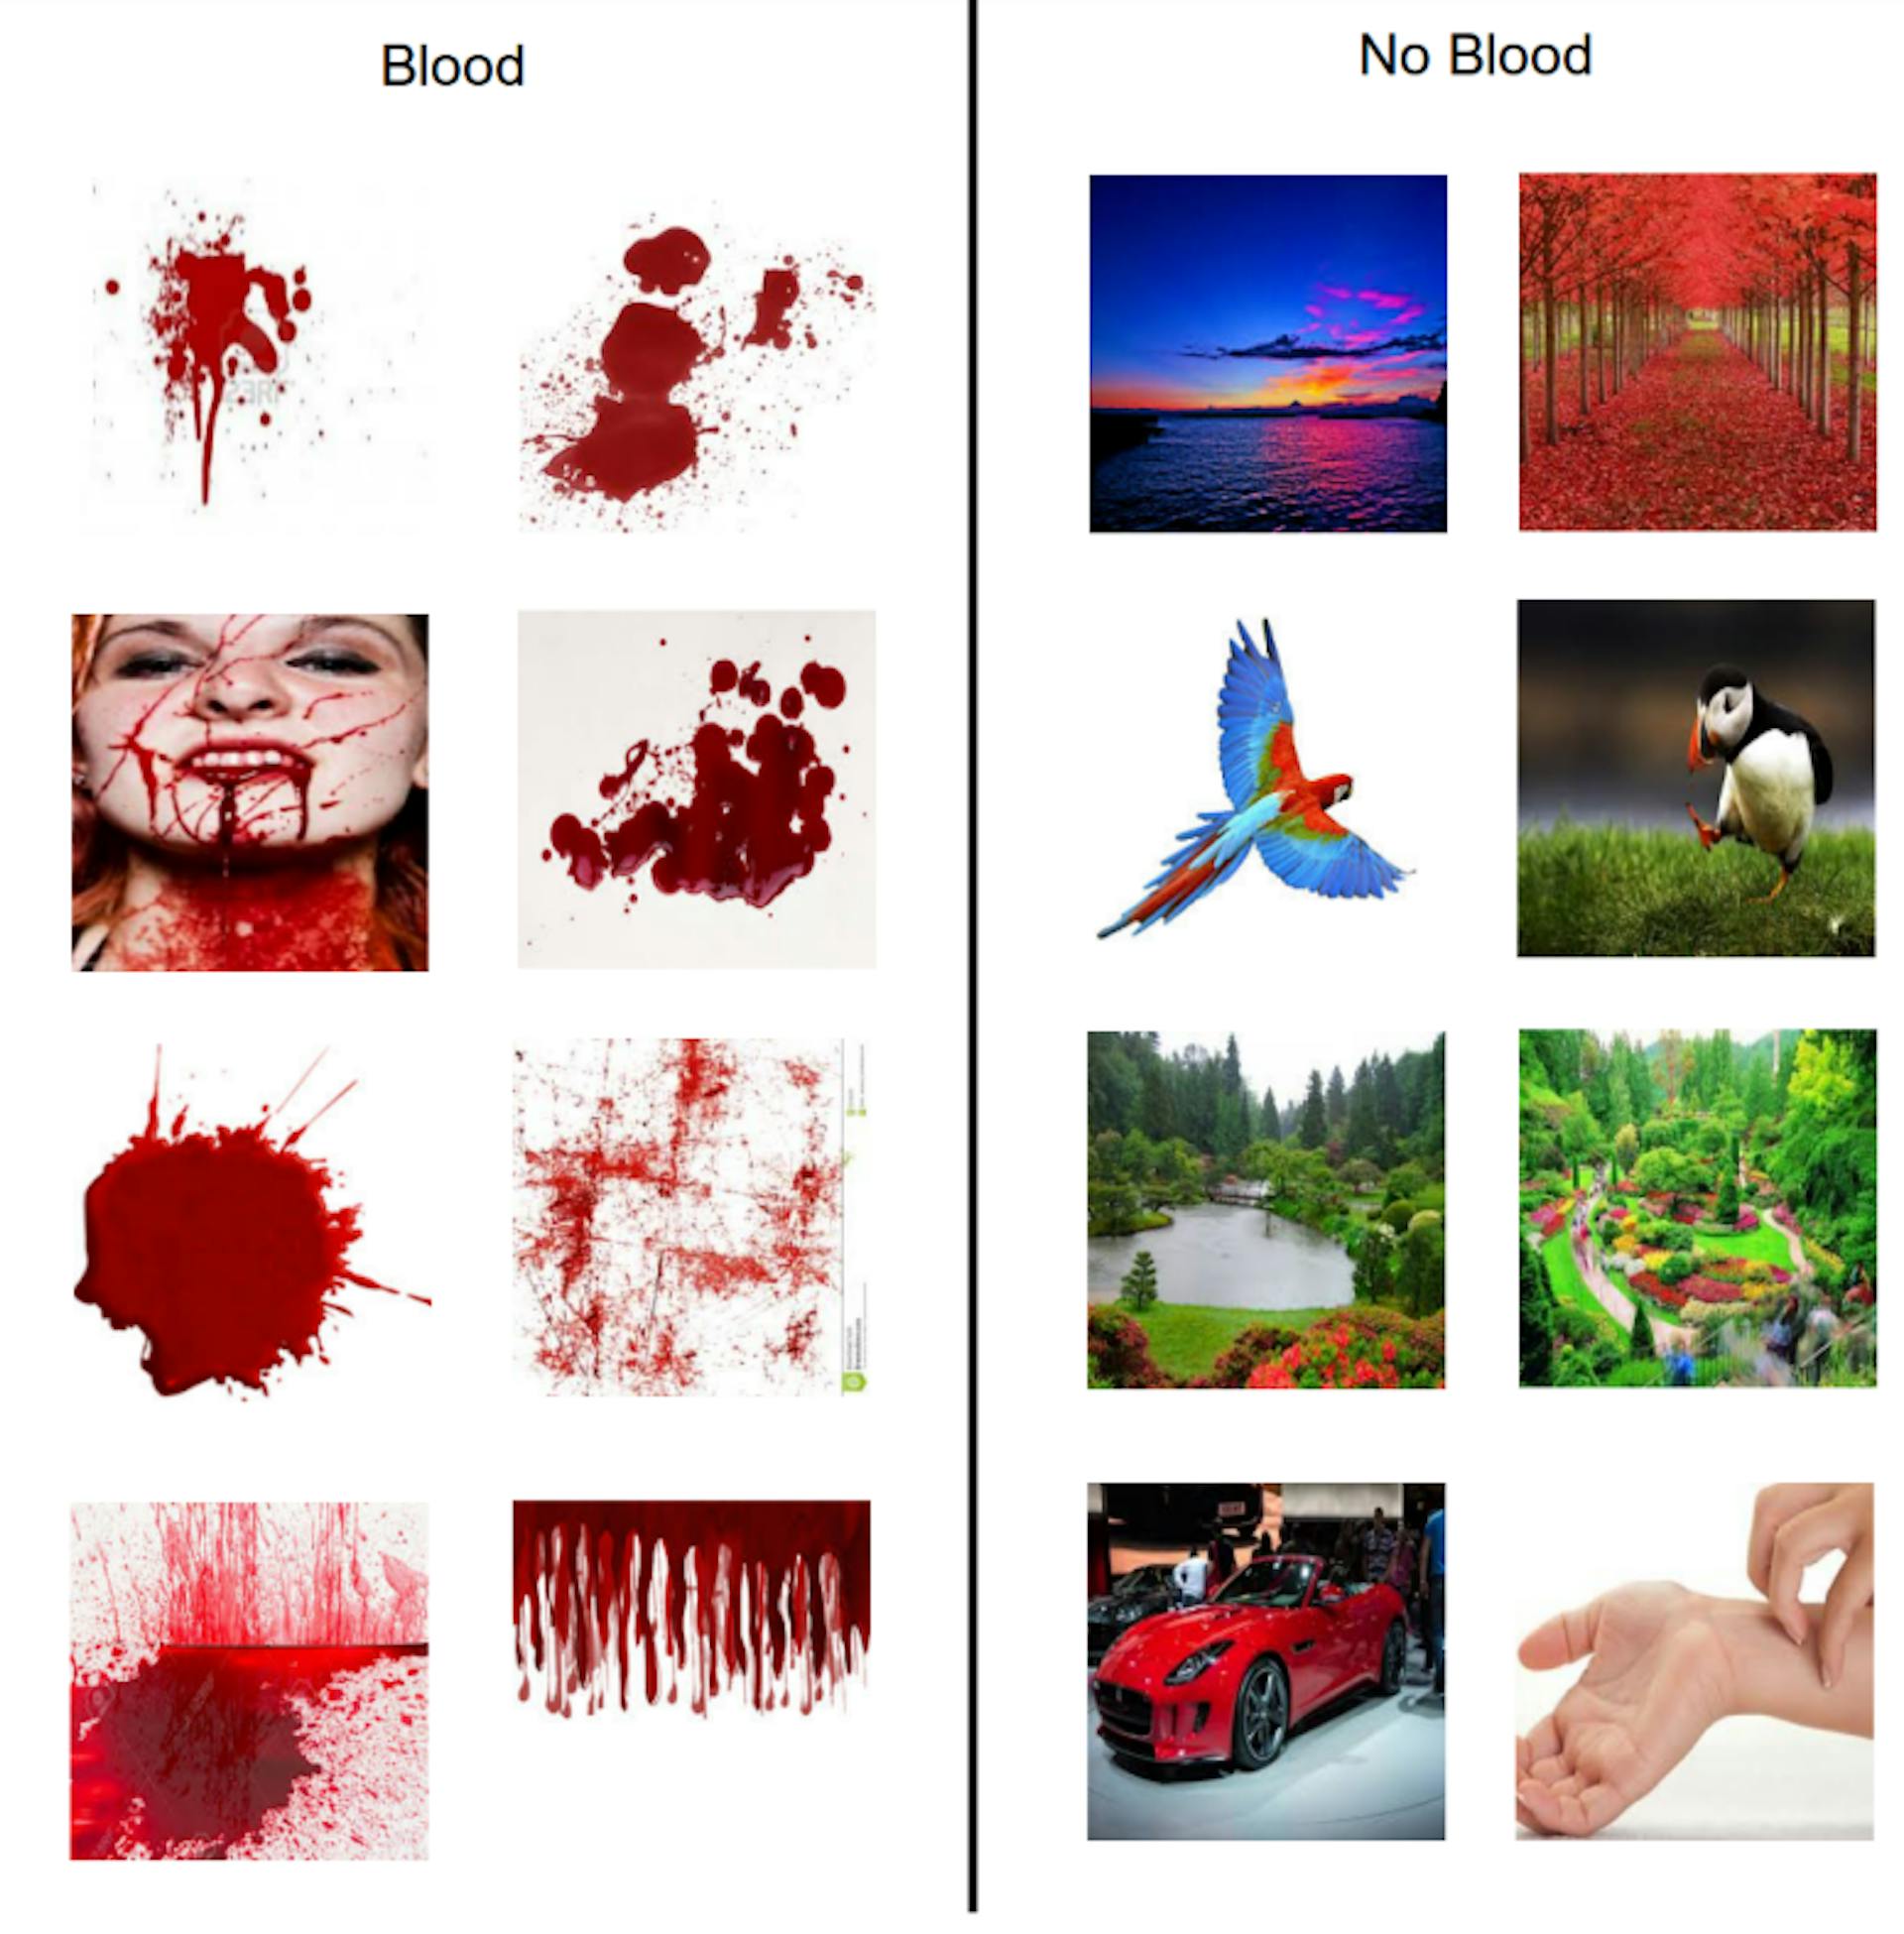 그림 3.3: 혈액 및 비혈액 모델을 생성하기 위해 Google에서 다운로드한 샘플 이미지를 보여주는 그림.